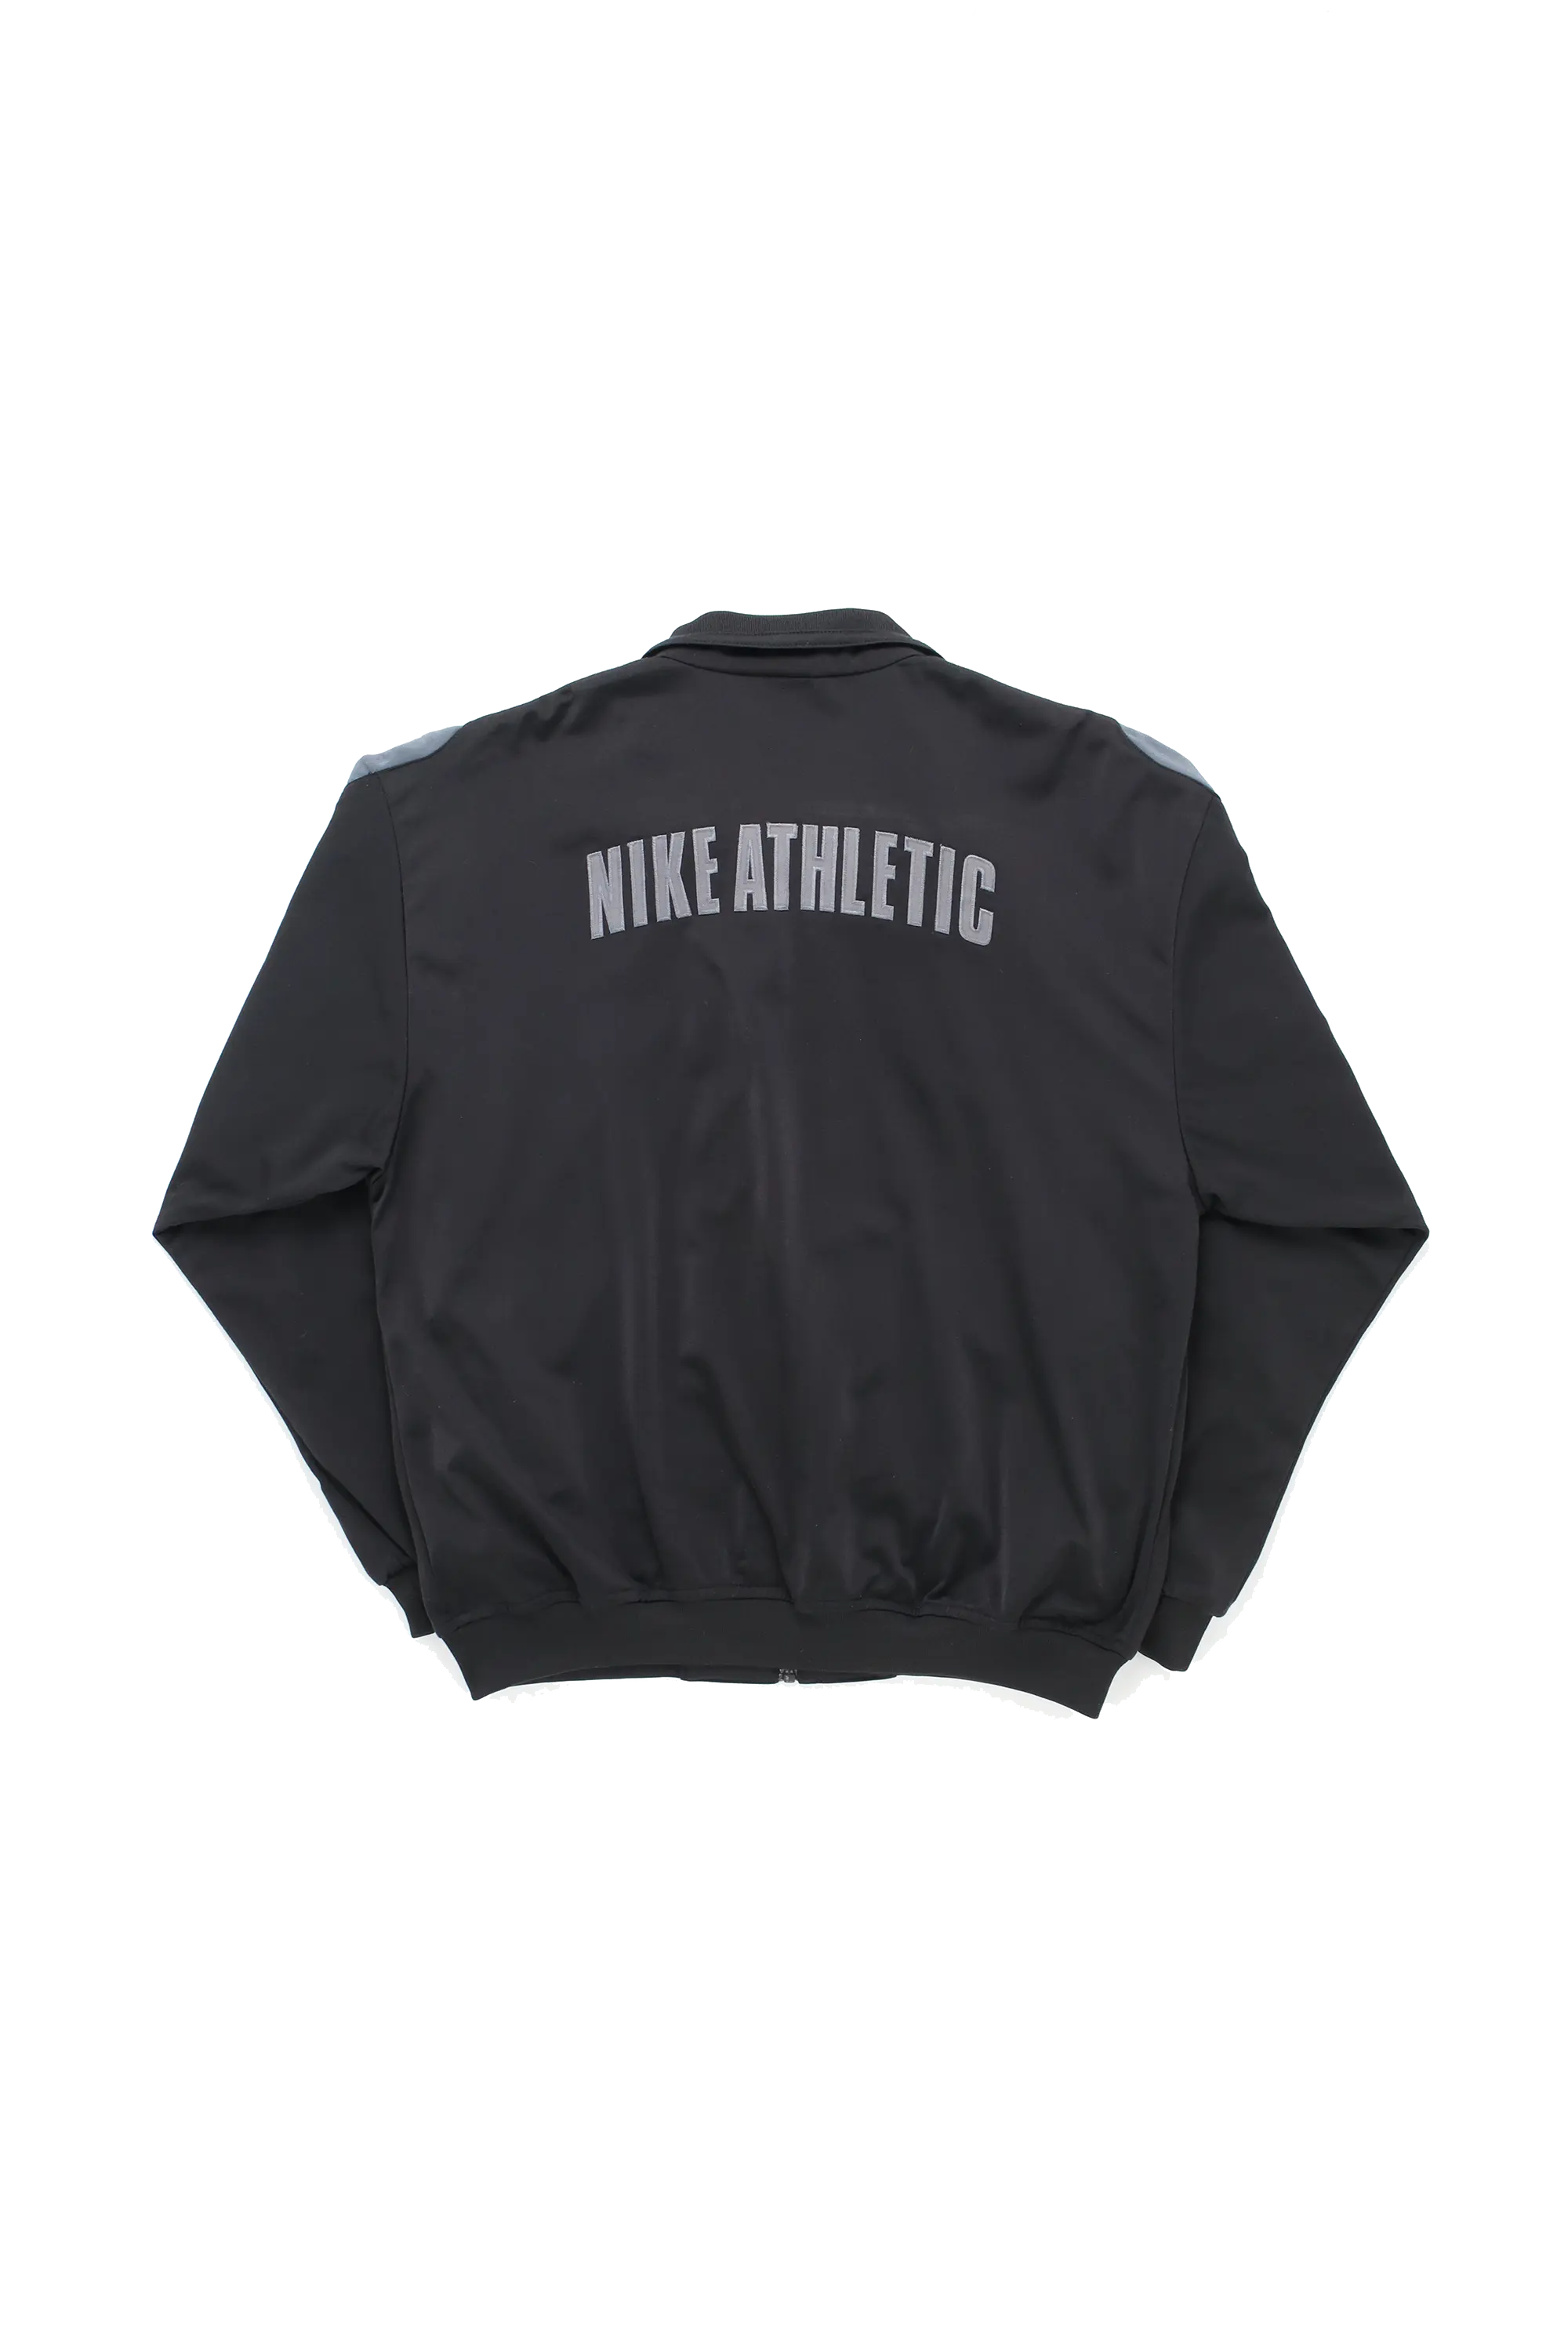 Nike Athletic Trackjacket